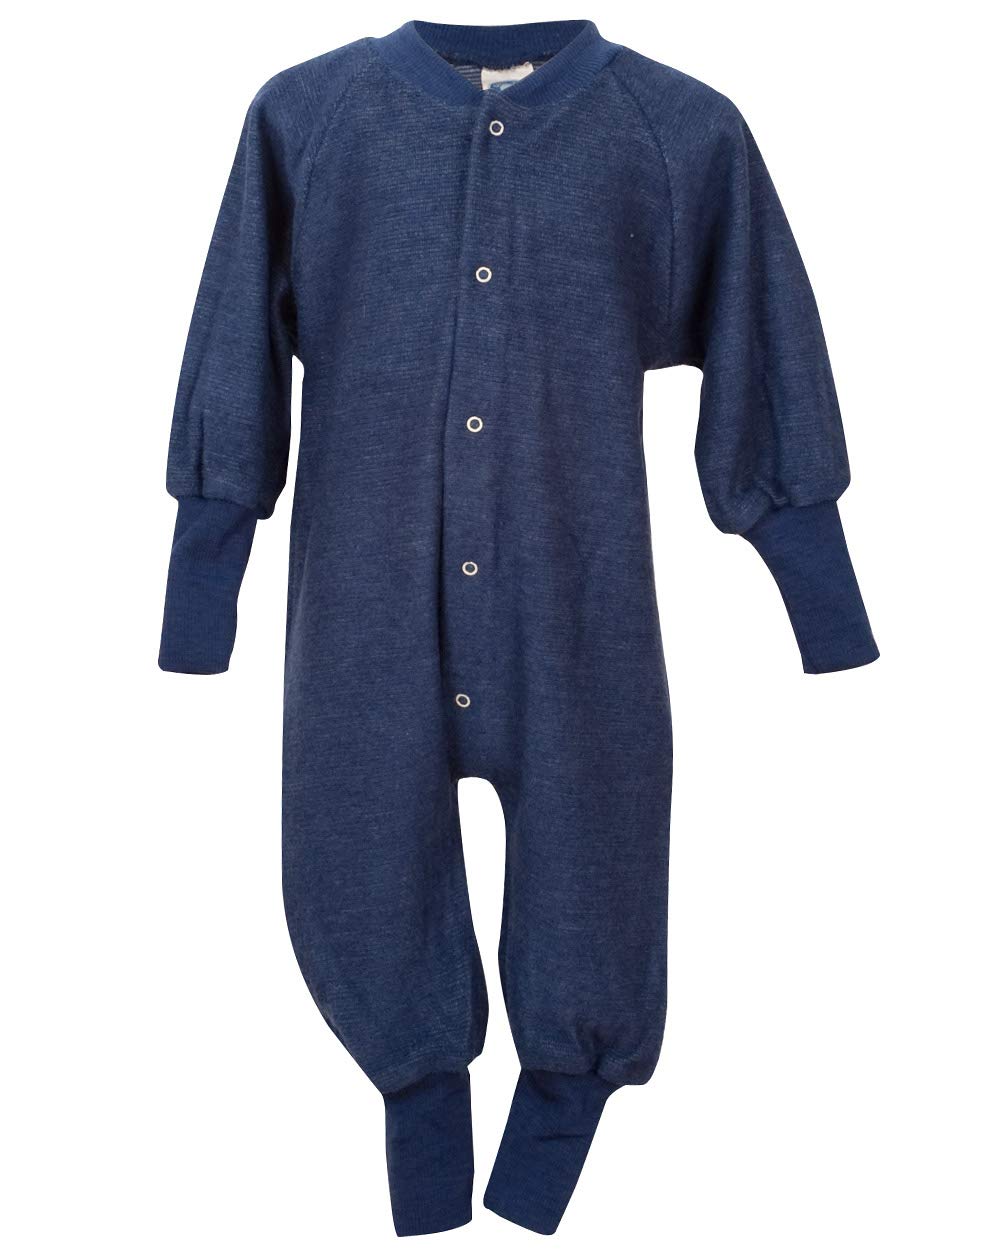 Cosilana, Einteiler Schlafanzug ohne Fuß, 100% Wolle (80, Marine)